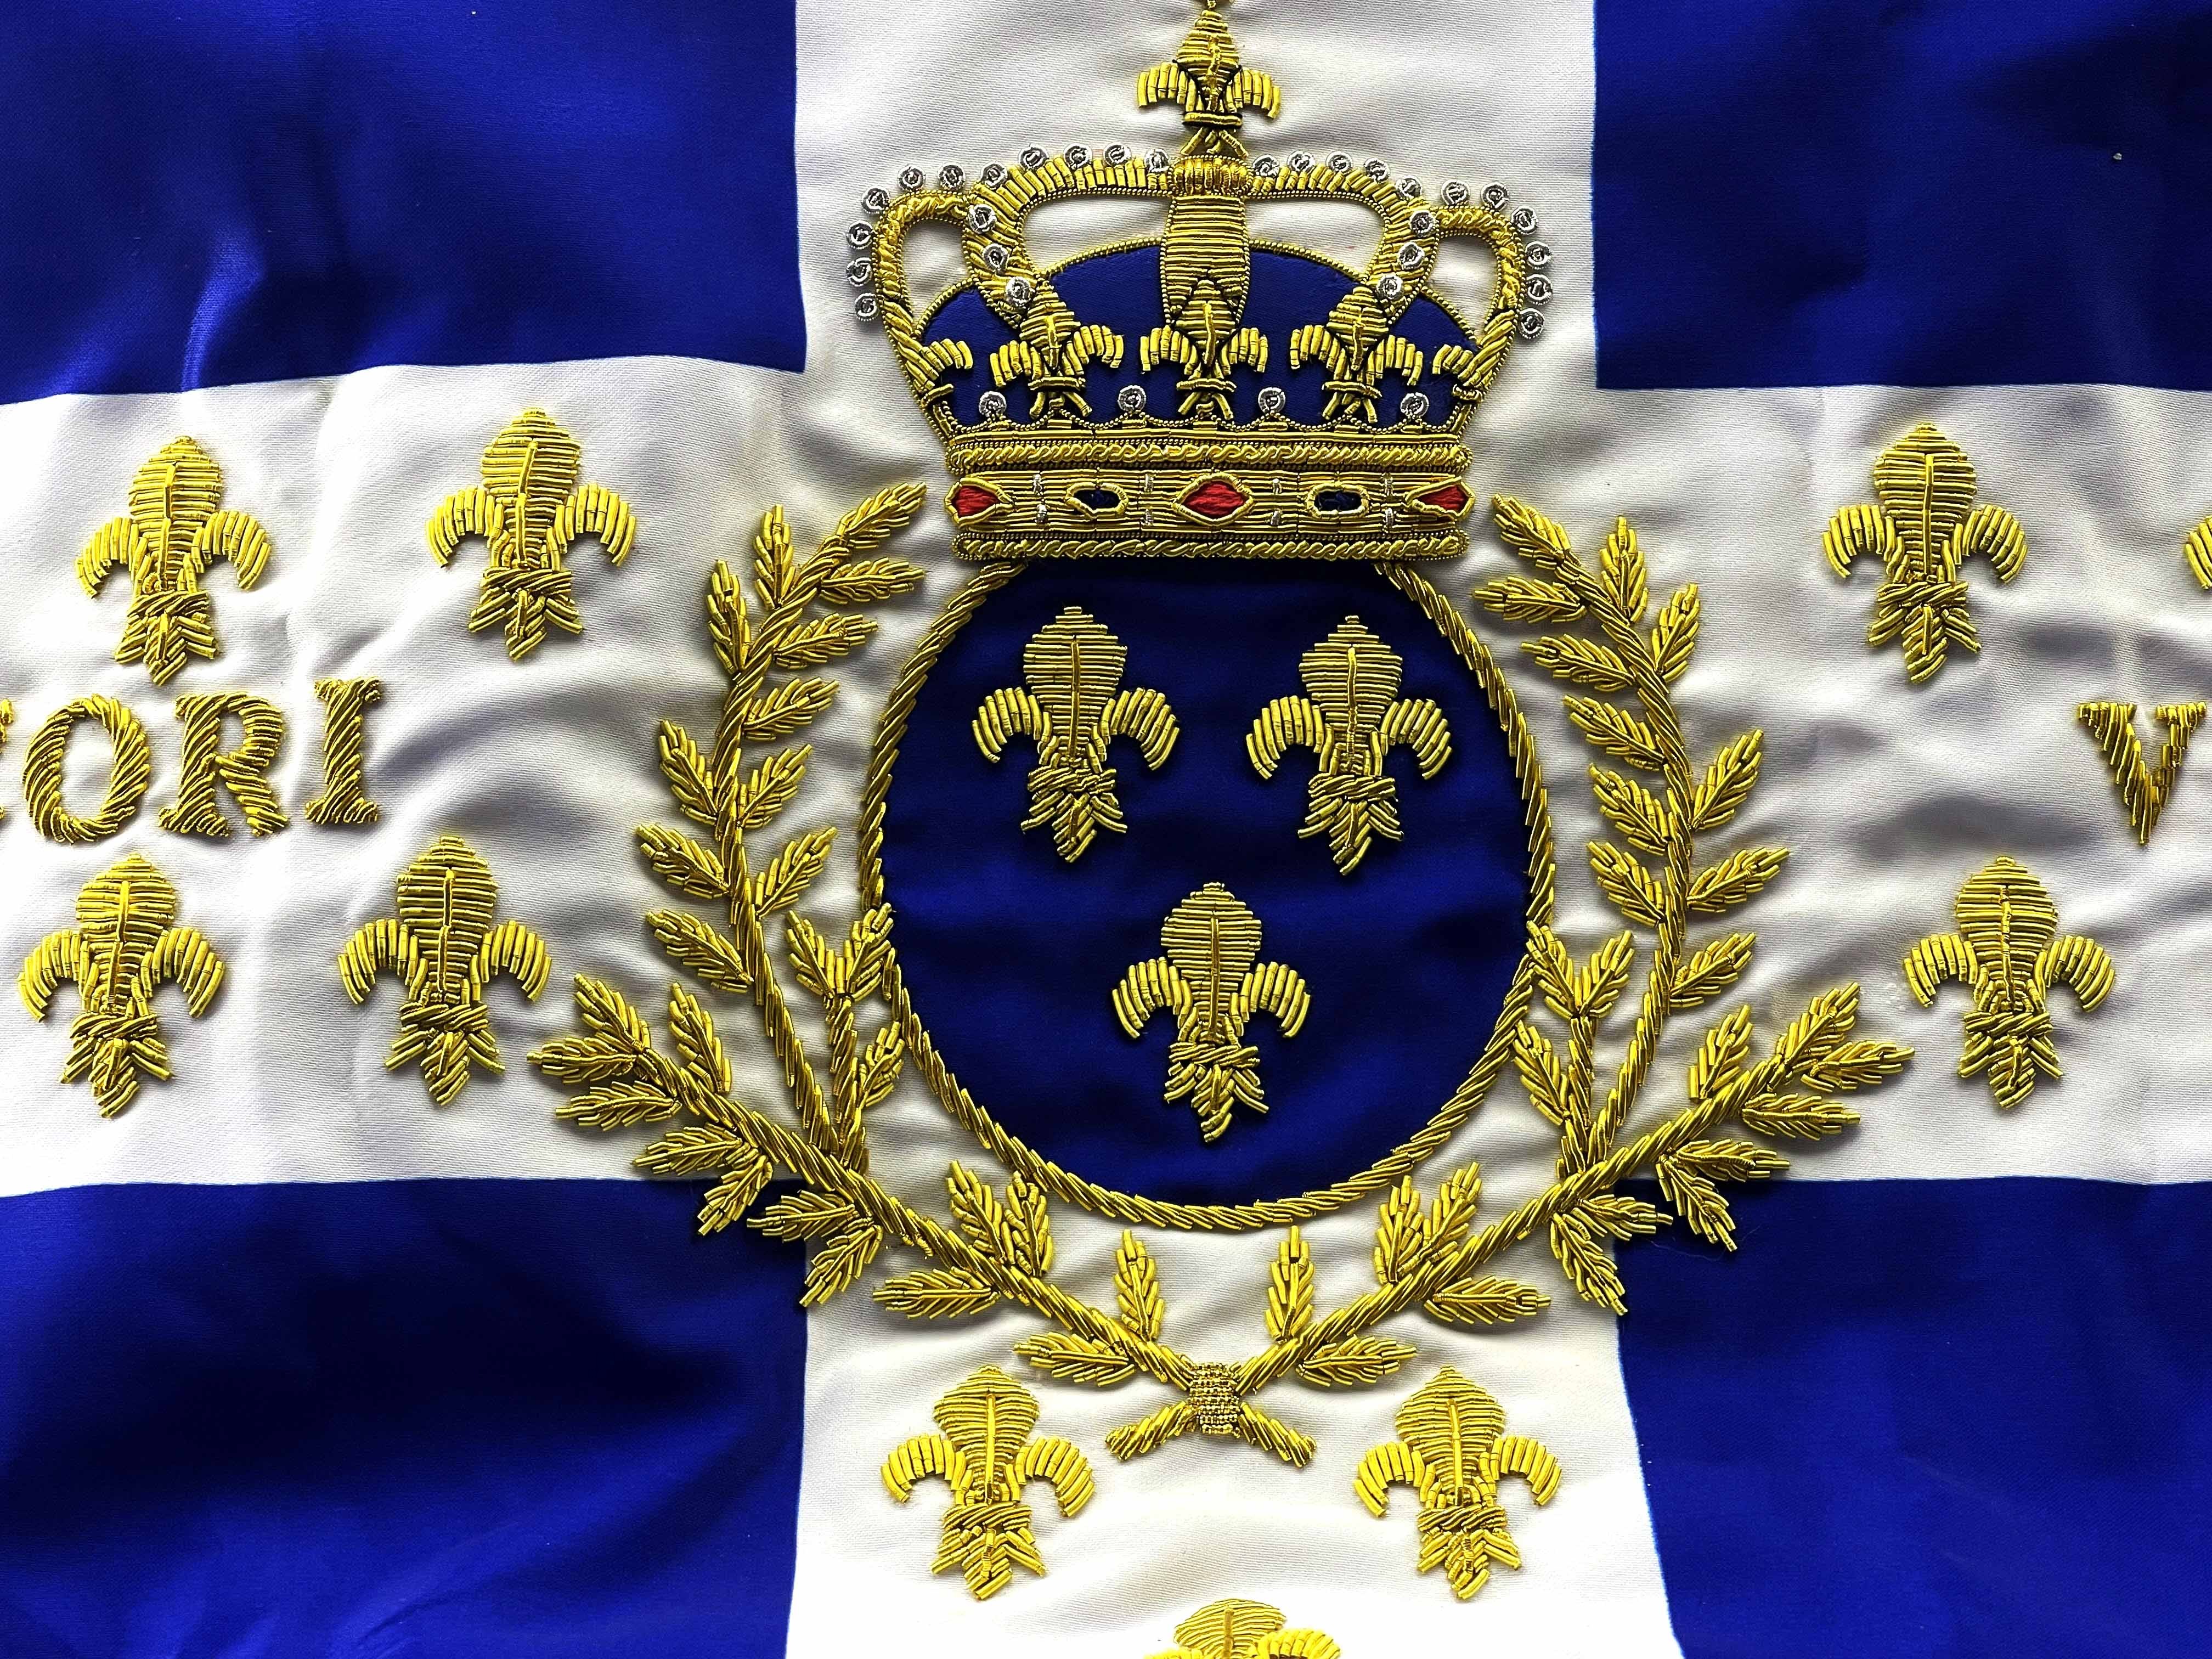 King's Regiment Flag